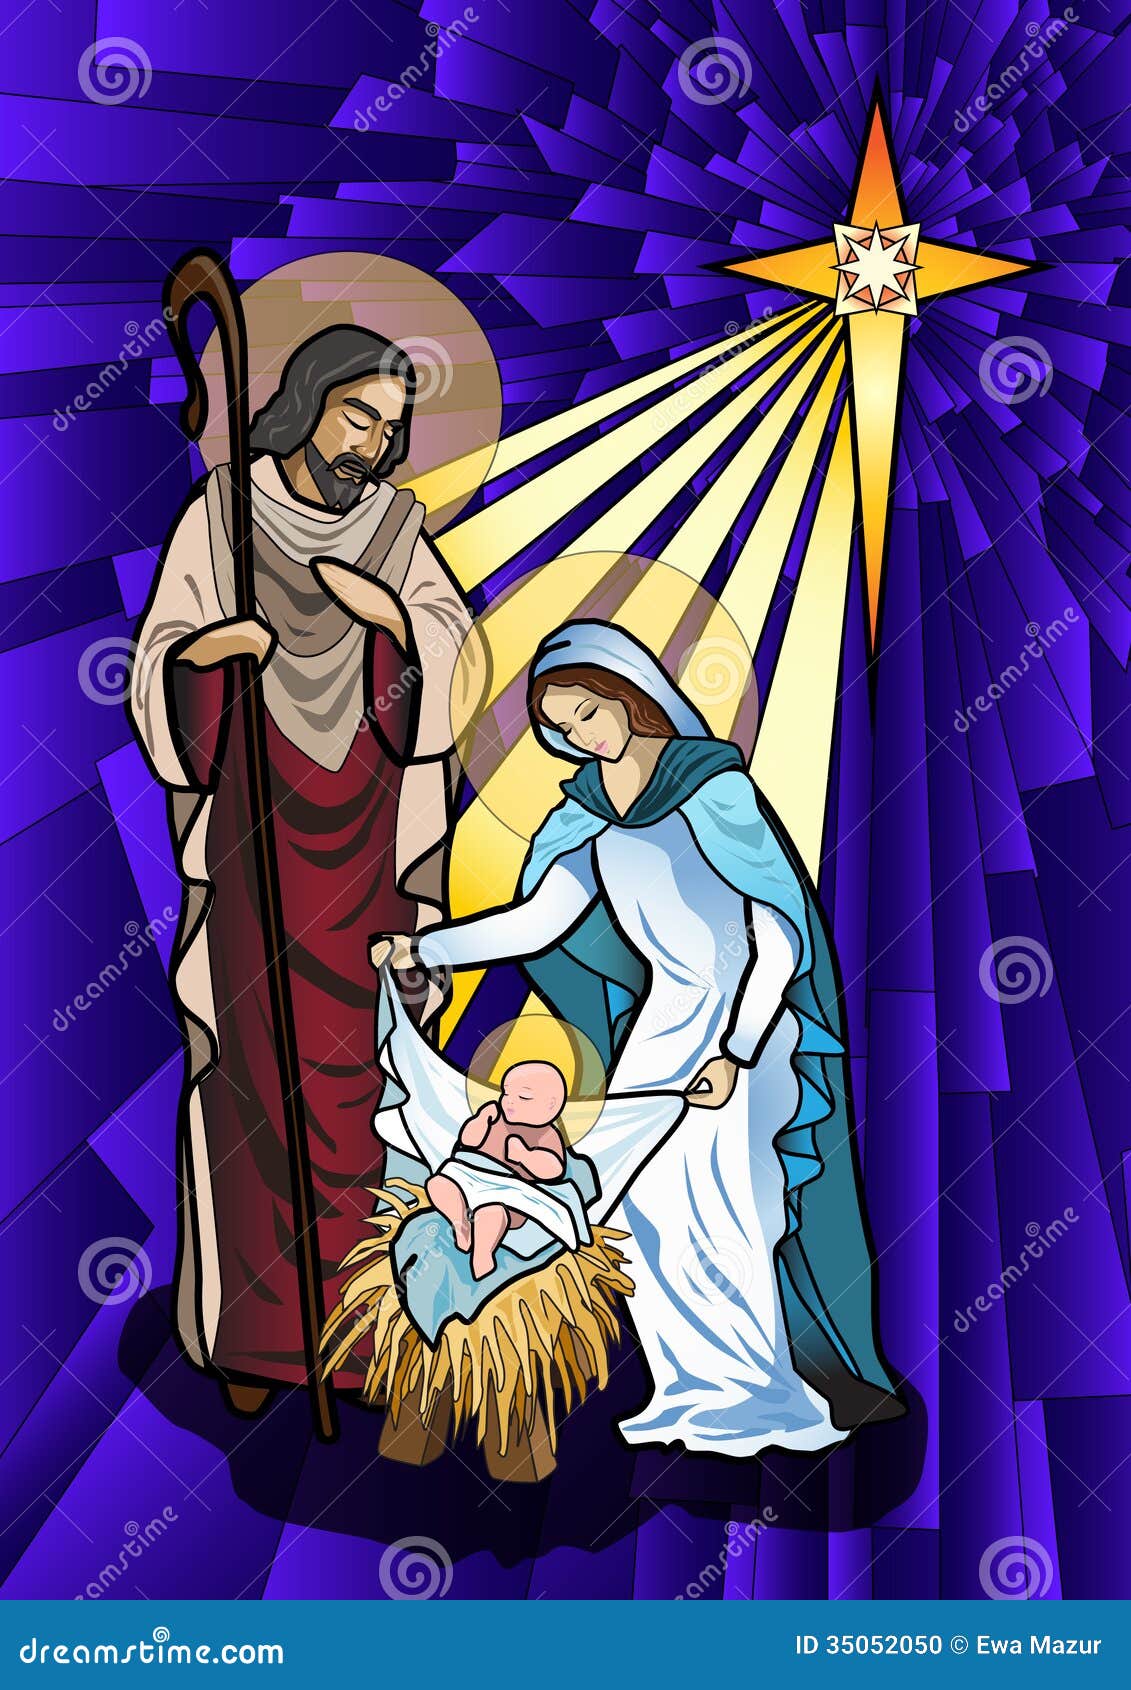 clipart holy family nativity - photo #9